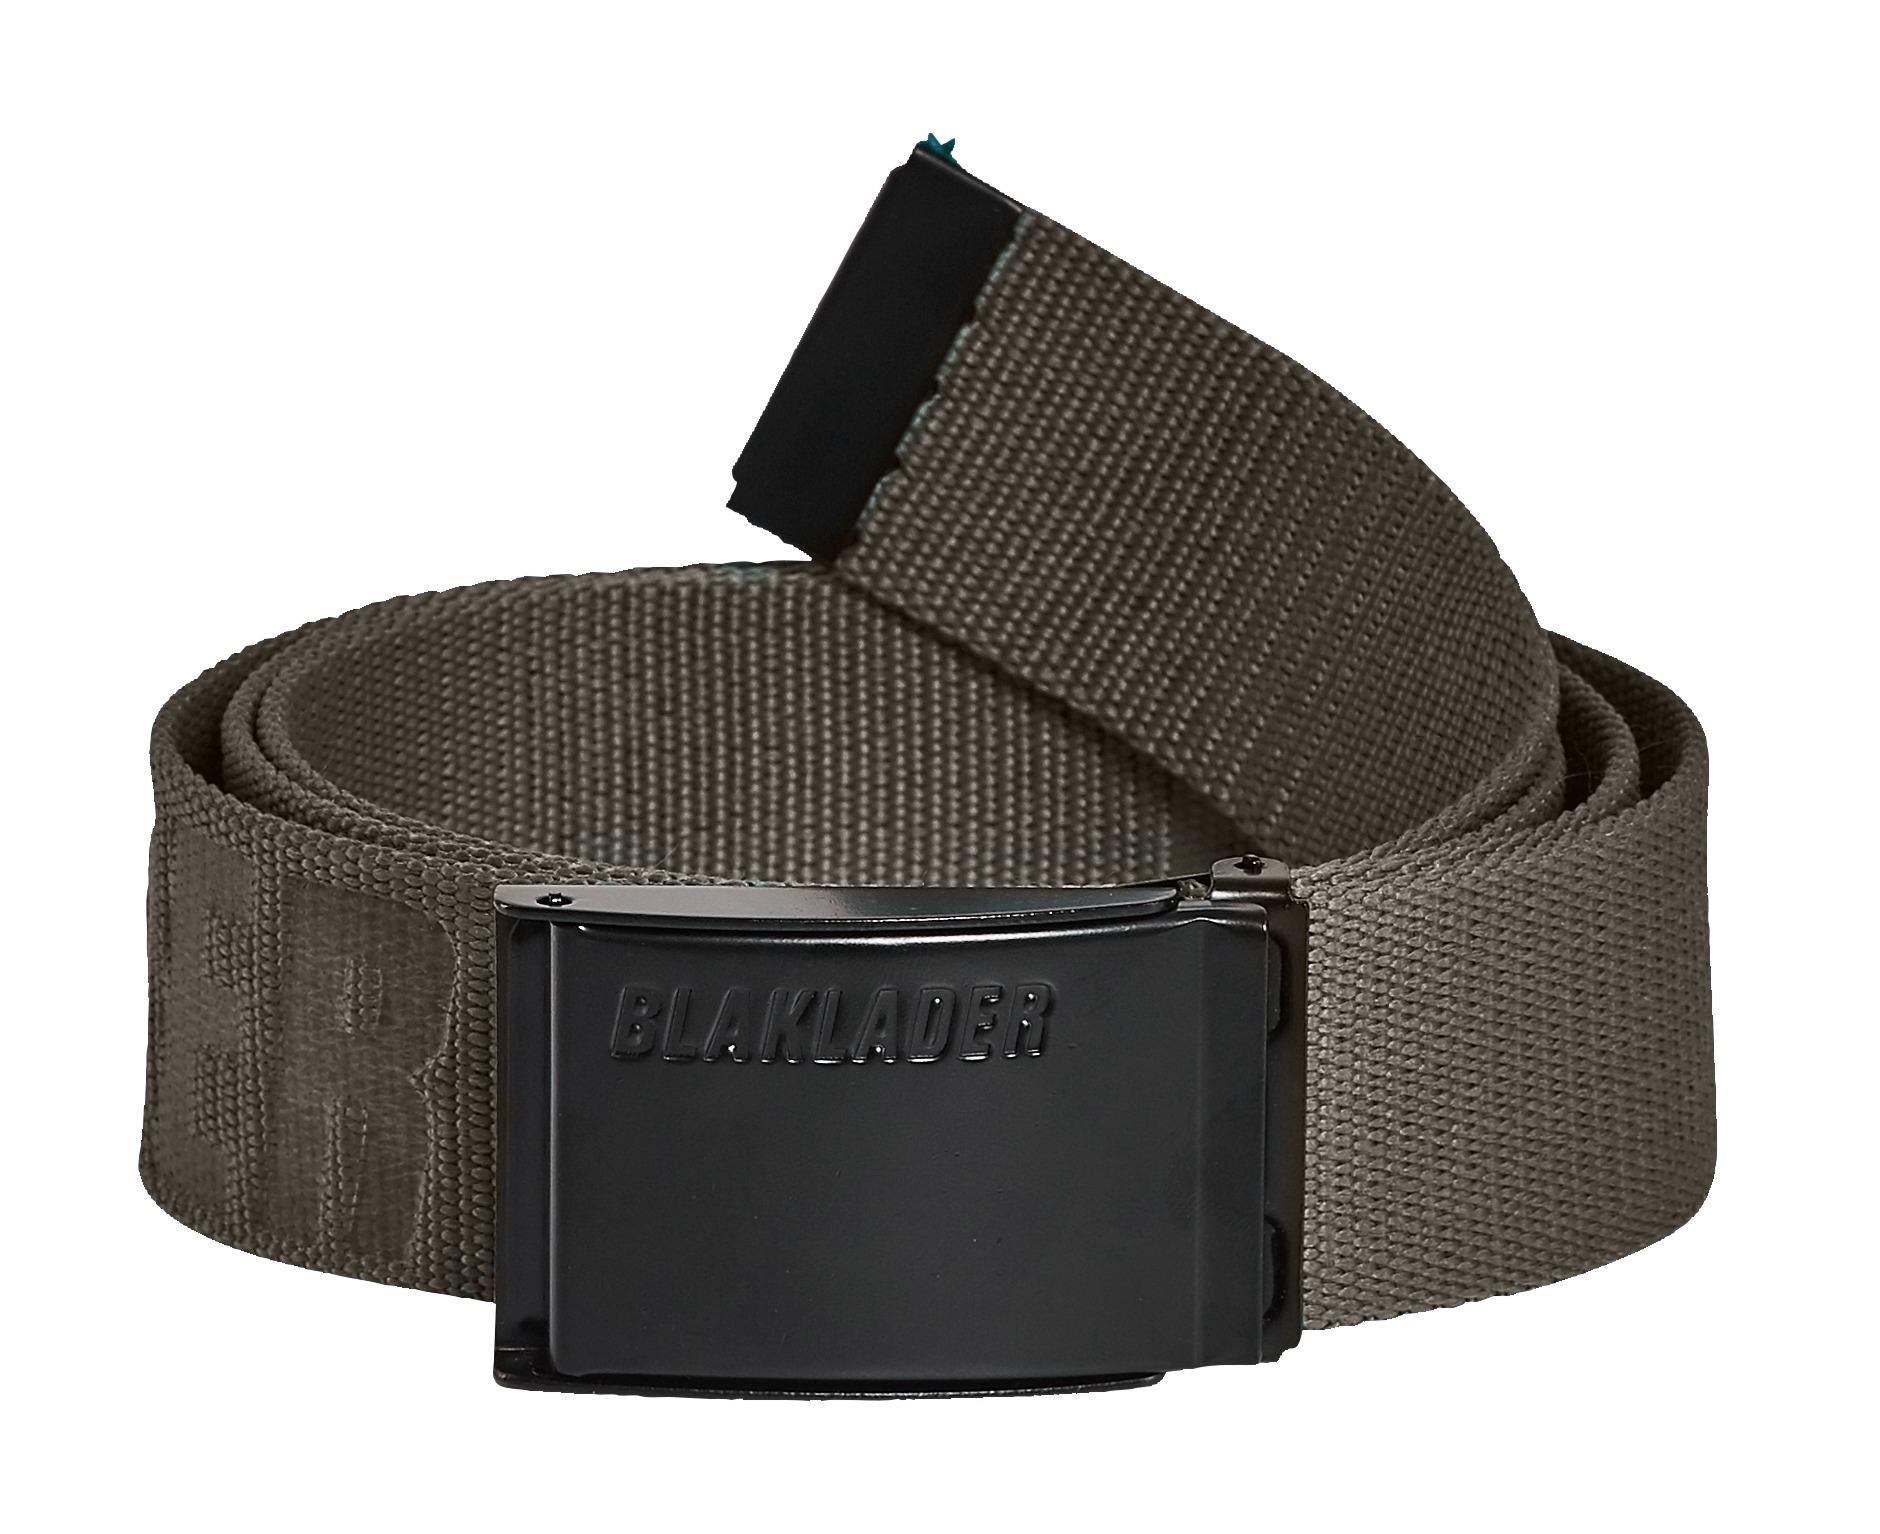 Blaklader olive textile adjustable belt with metal buckle #4034